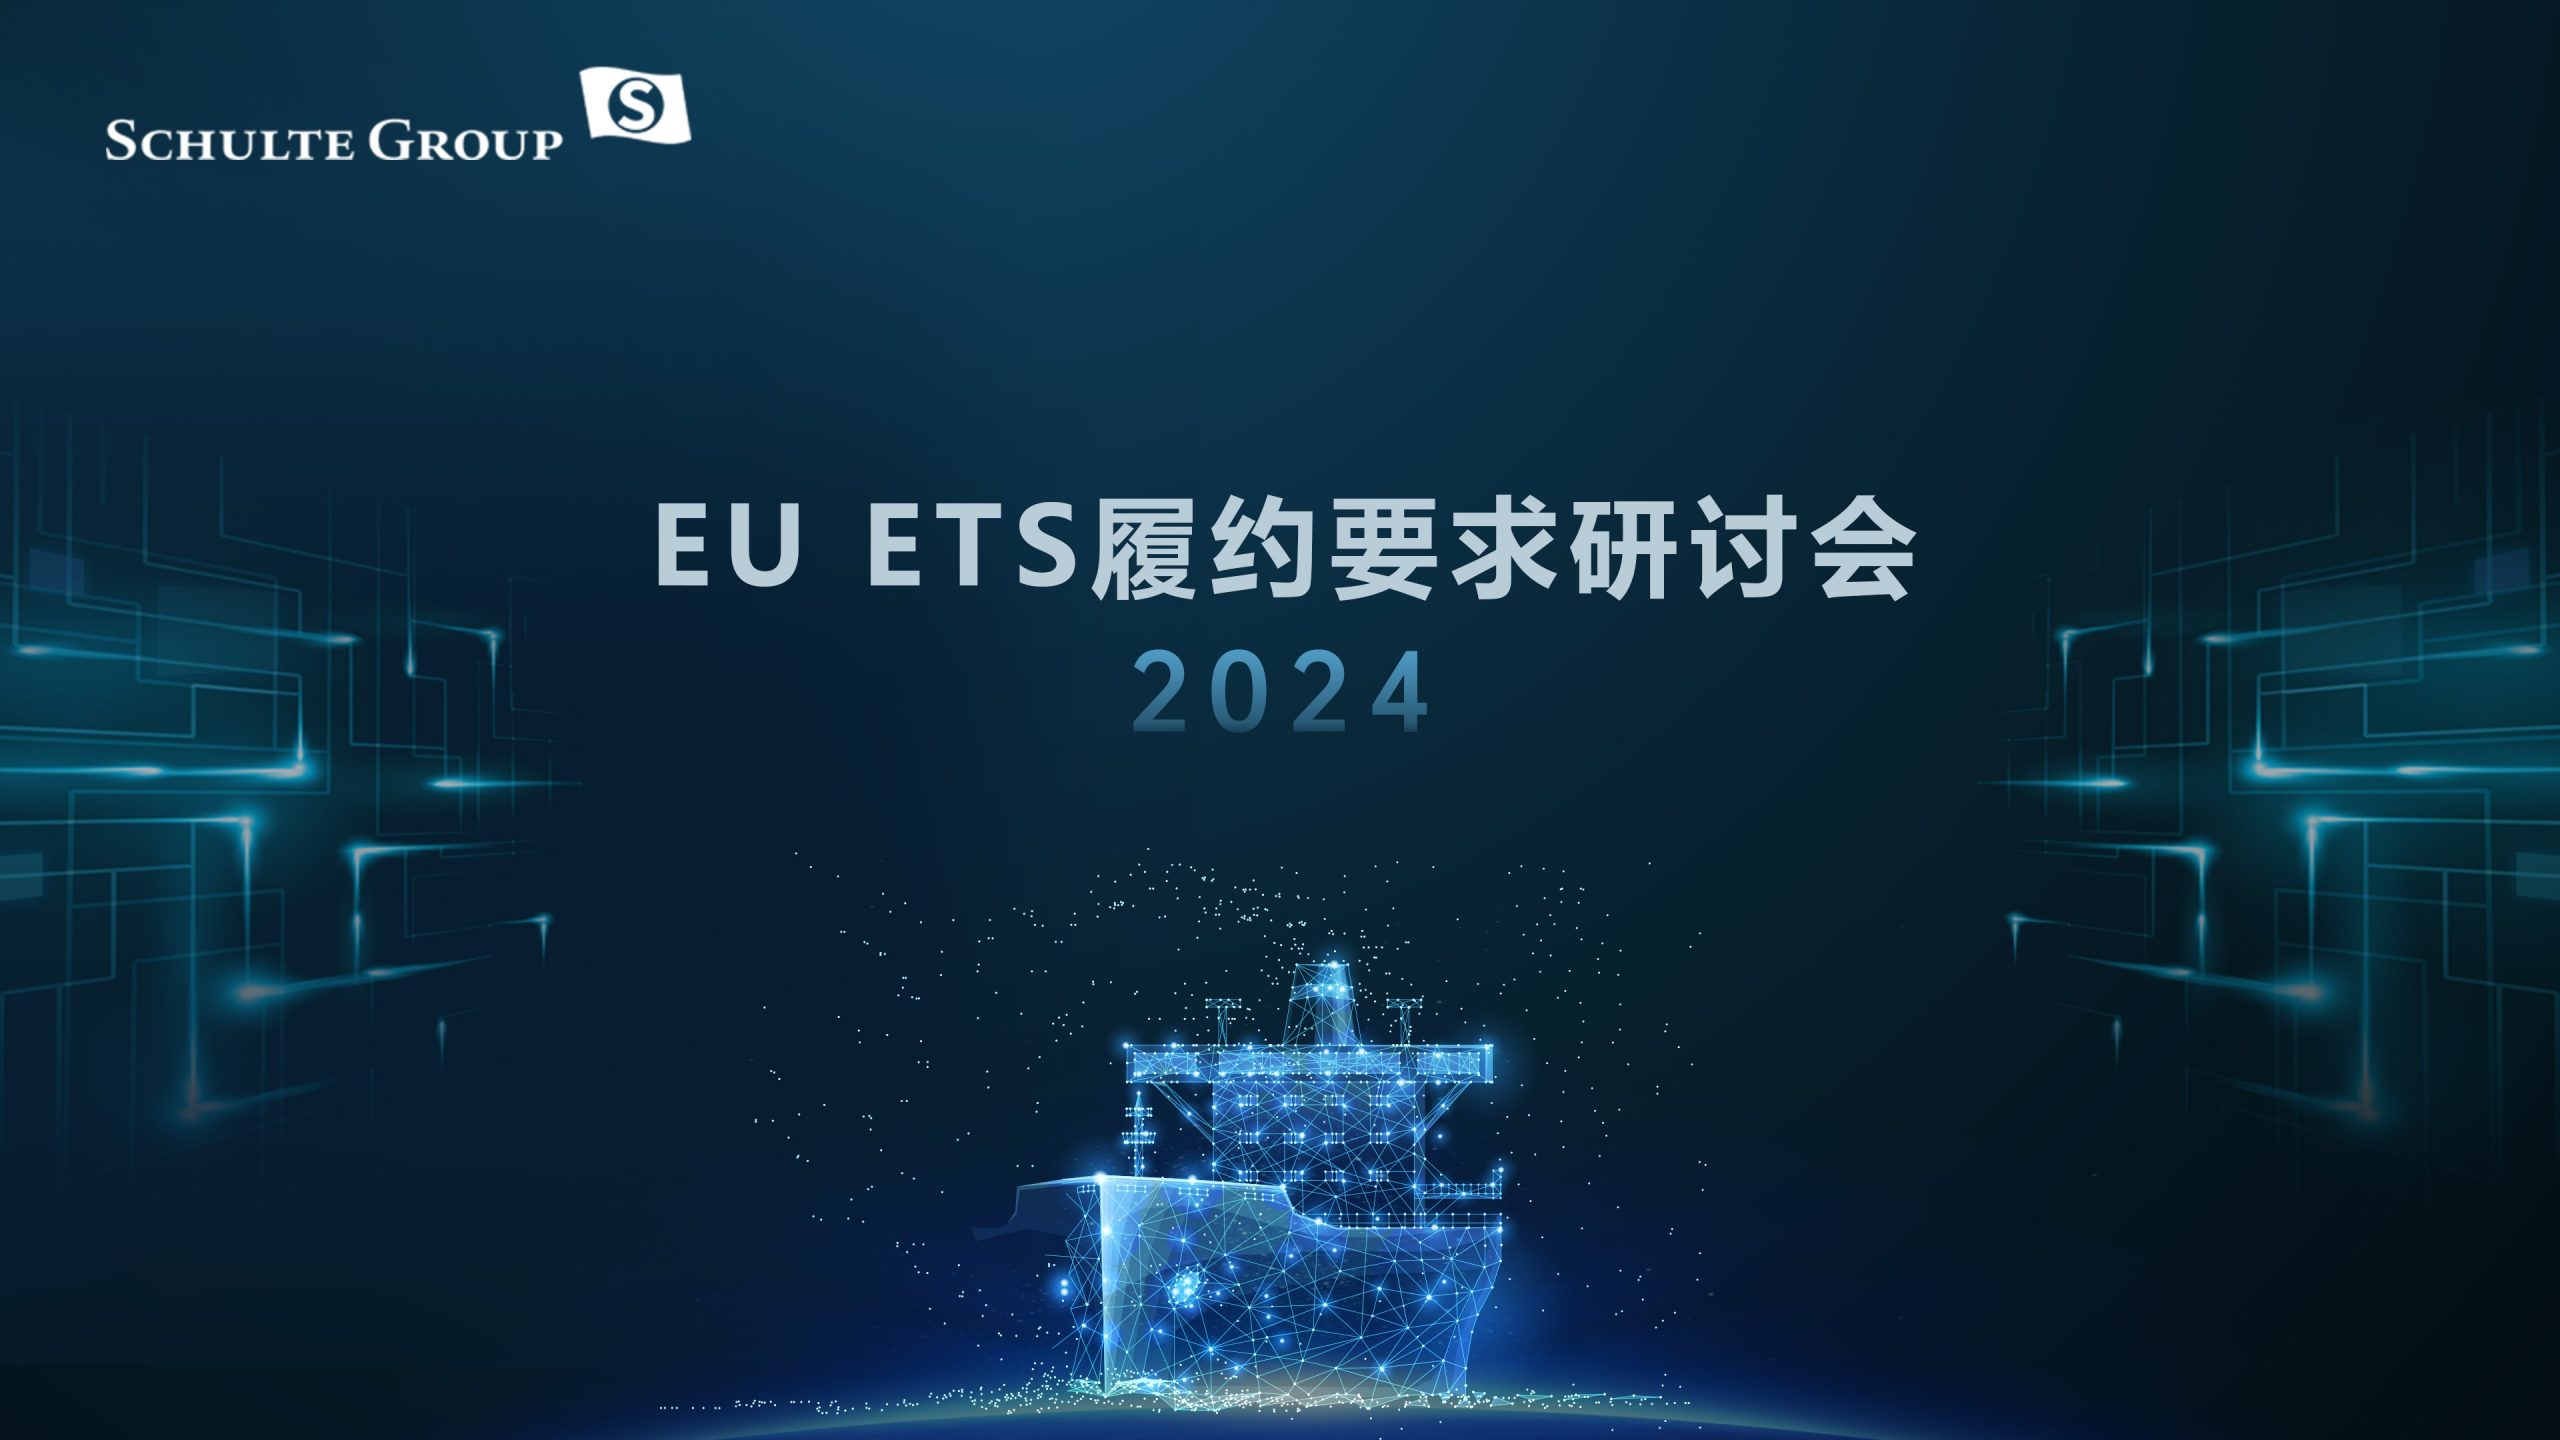 贝仕中国成功举办EU ETS研讨会